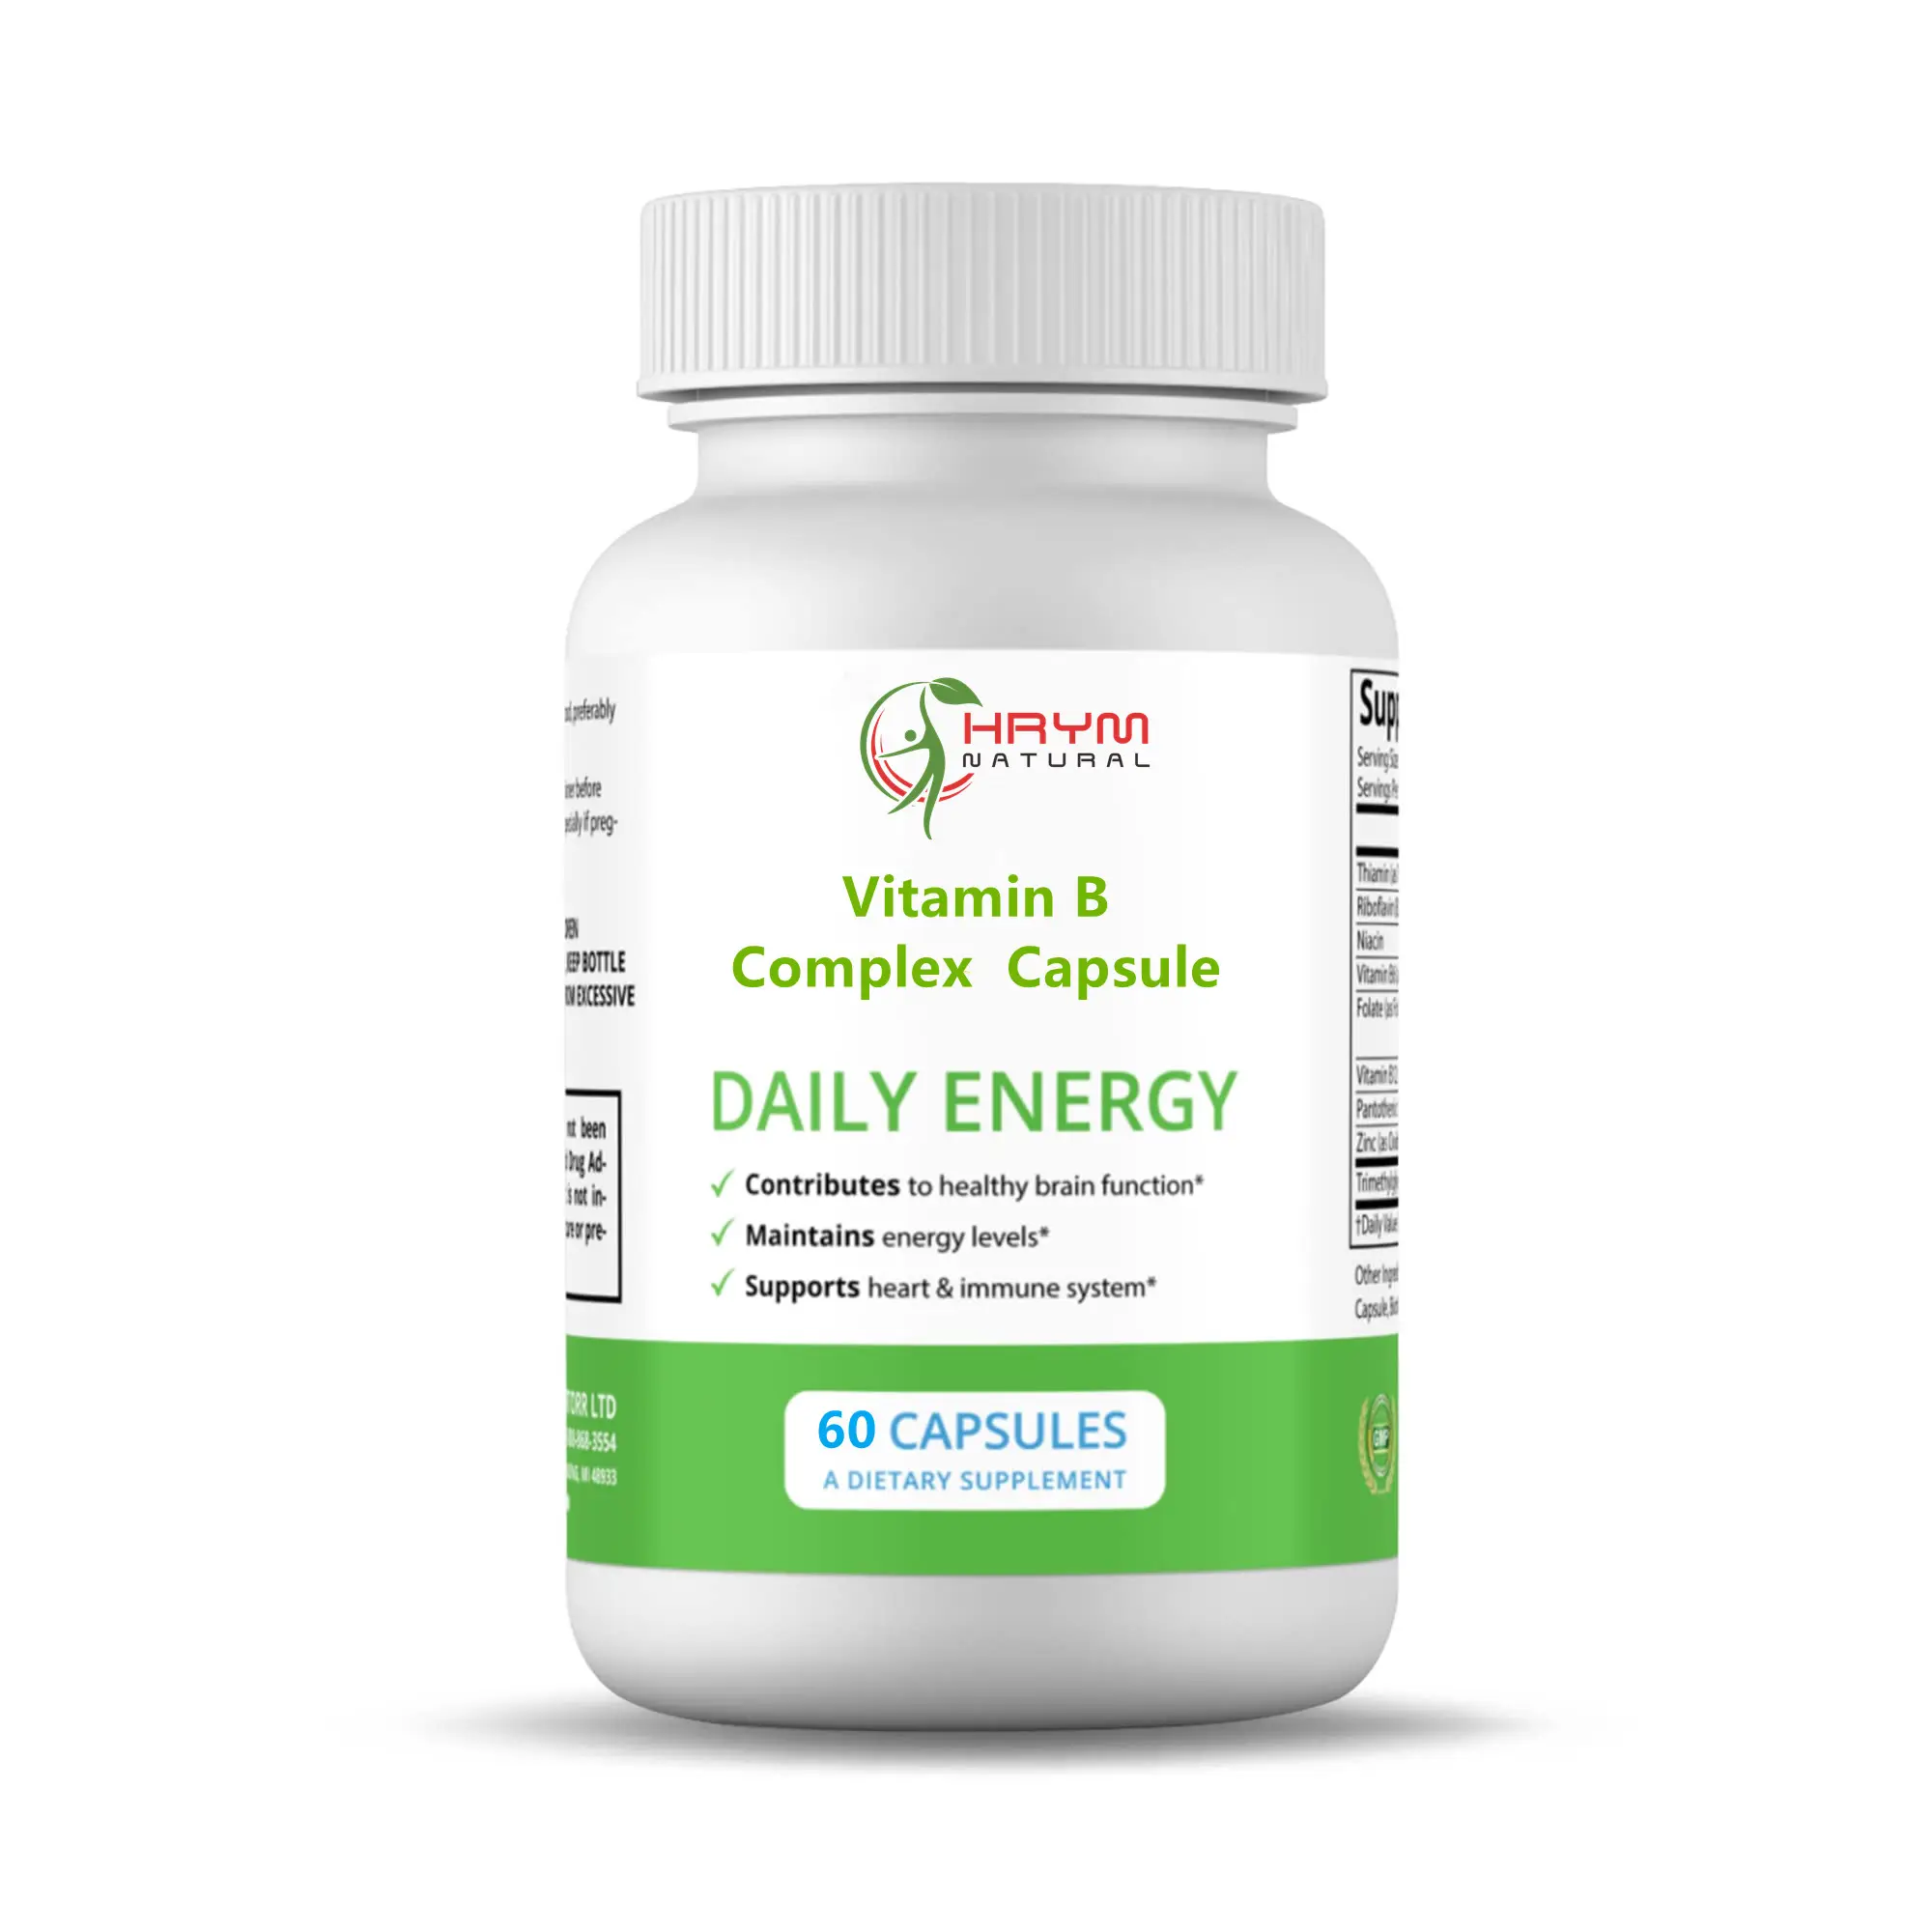 Cápsula de complejo de vitamina B a base de plantas para aumentar la fuerza y el equilibrio